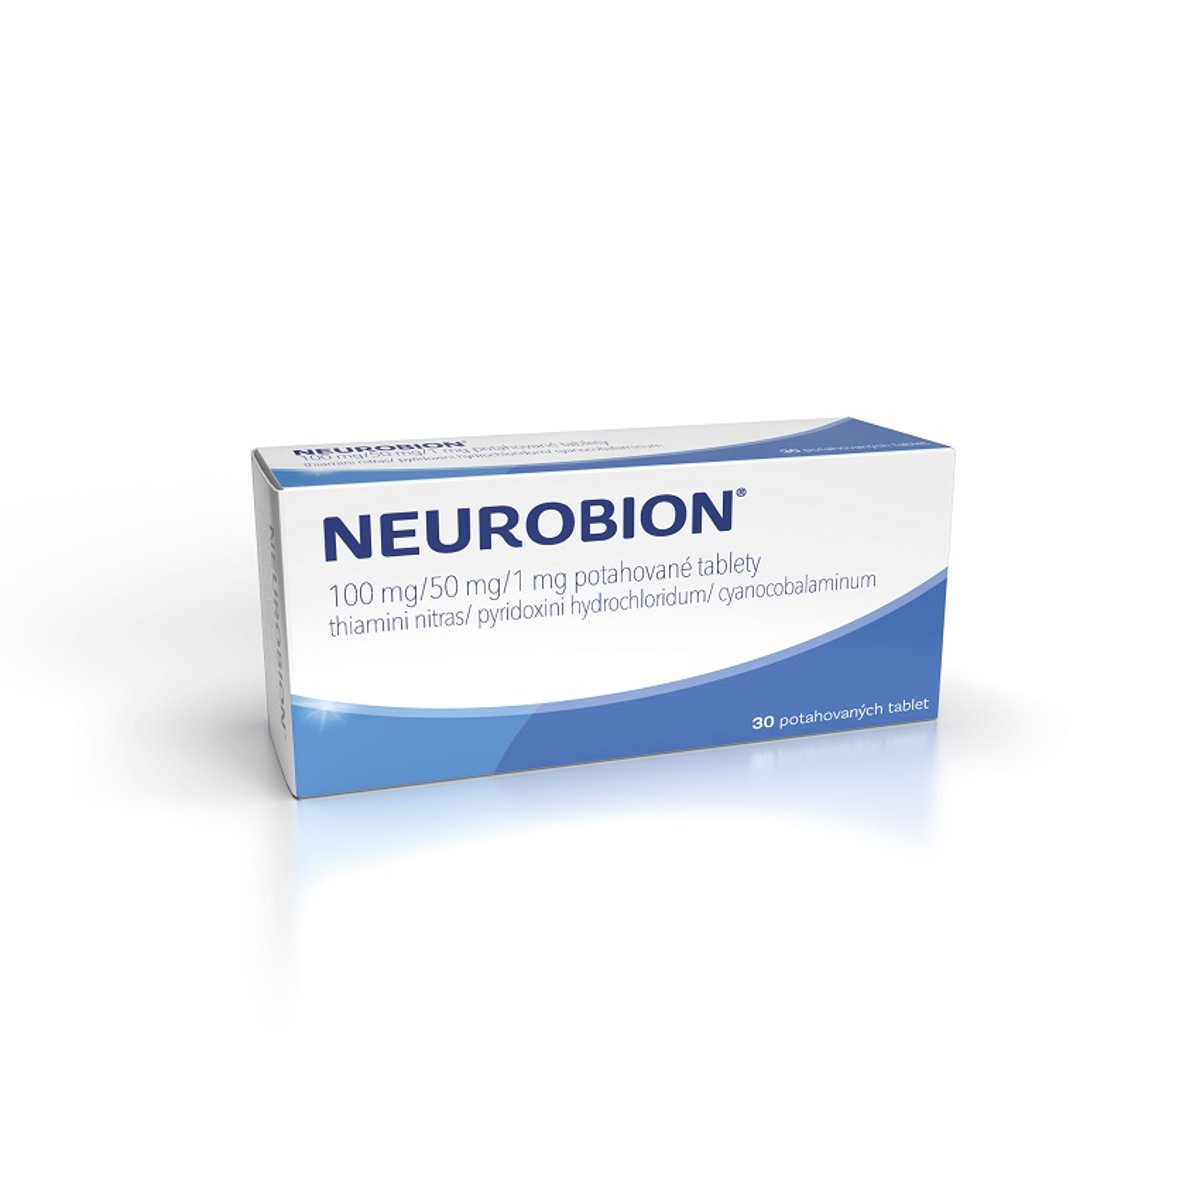 NEUROBION 100MG/50MG/1MG Potahovaná tableta 30